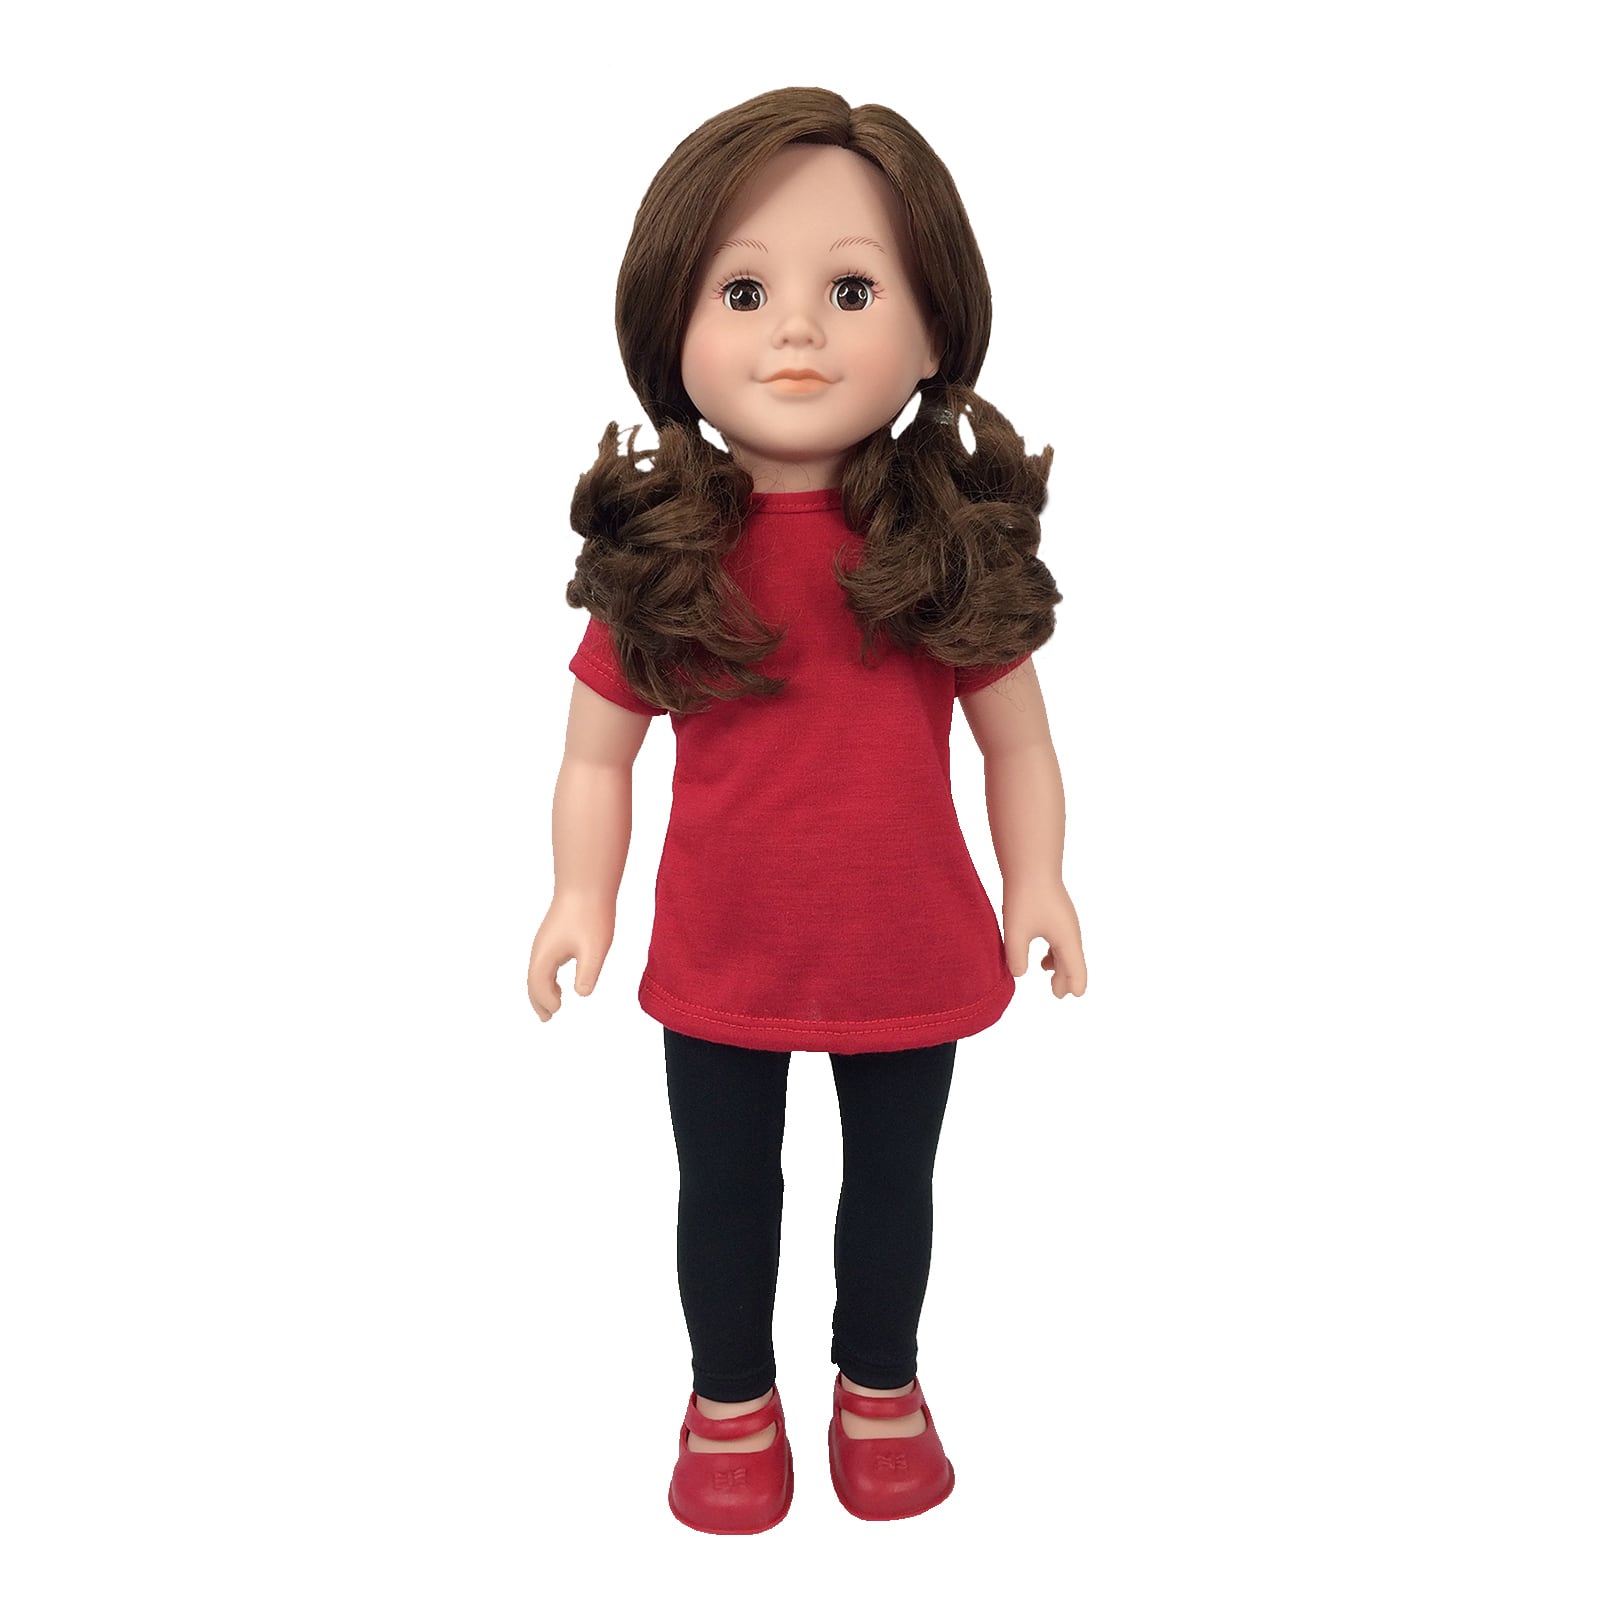 Modern Girls Lauren Doll by Creatology™